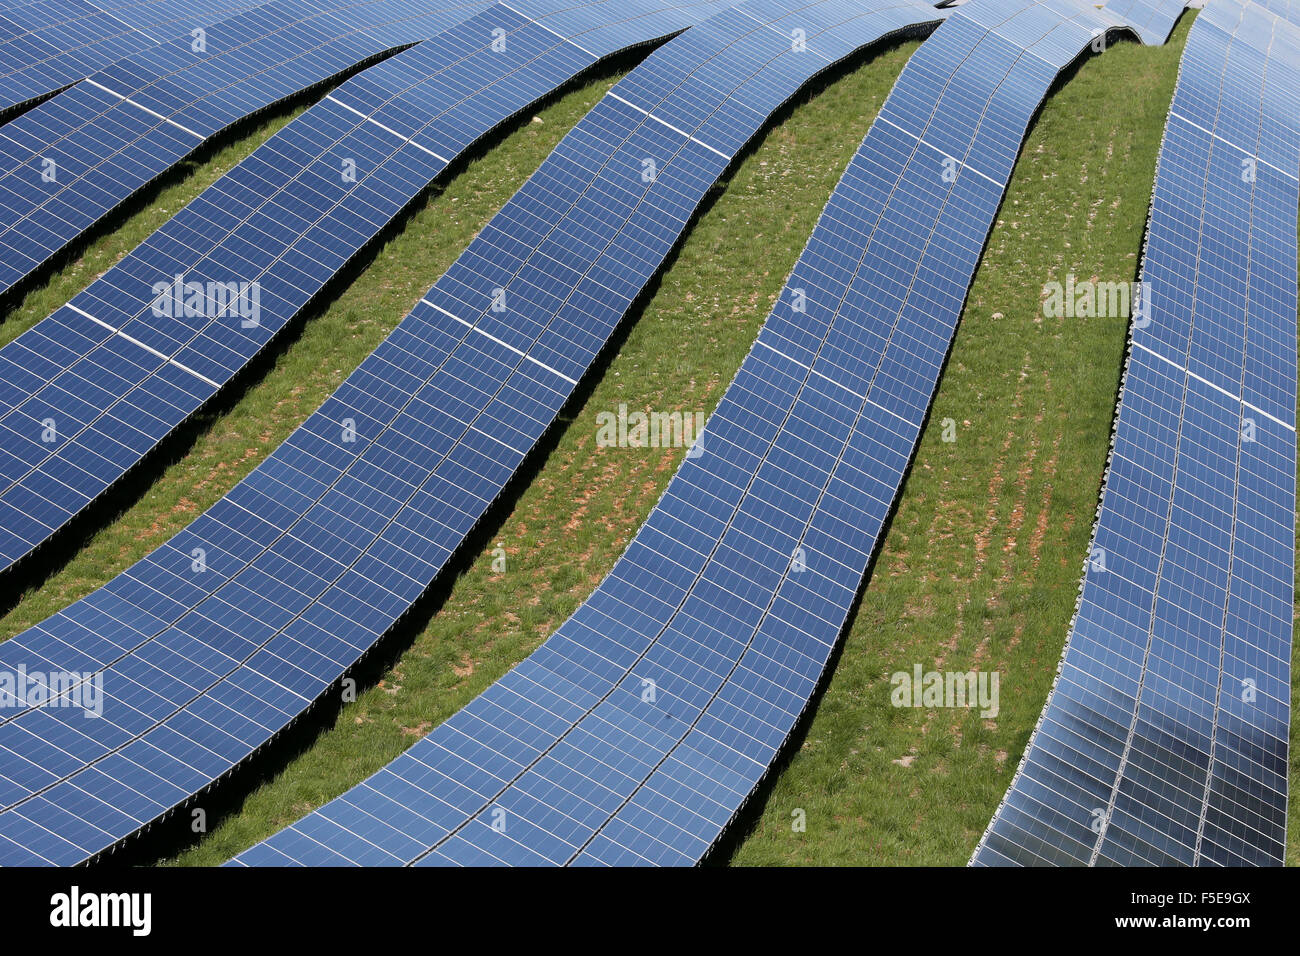 Ferme solaire, détail de centrale solaire photovoltaïque, Alpes-de-Haute-Provence, France, Europe Banque D'Images